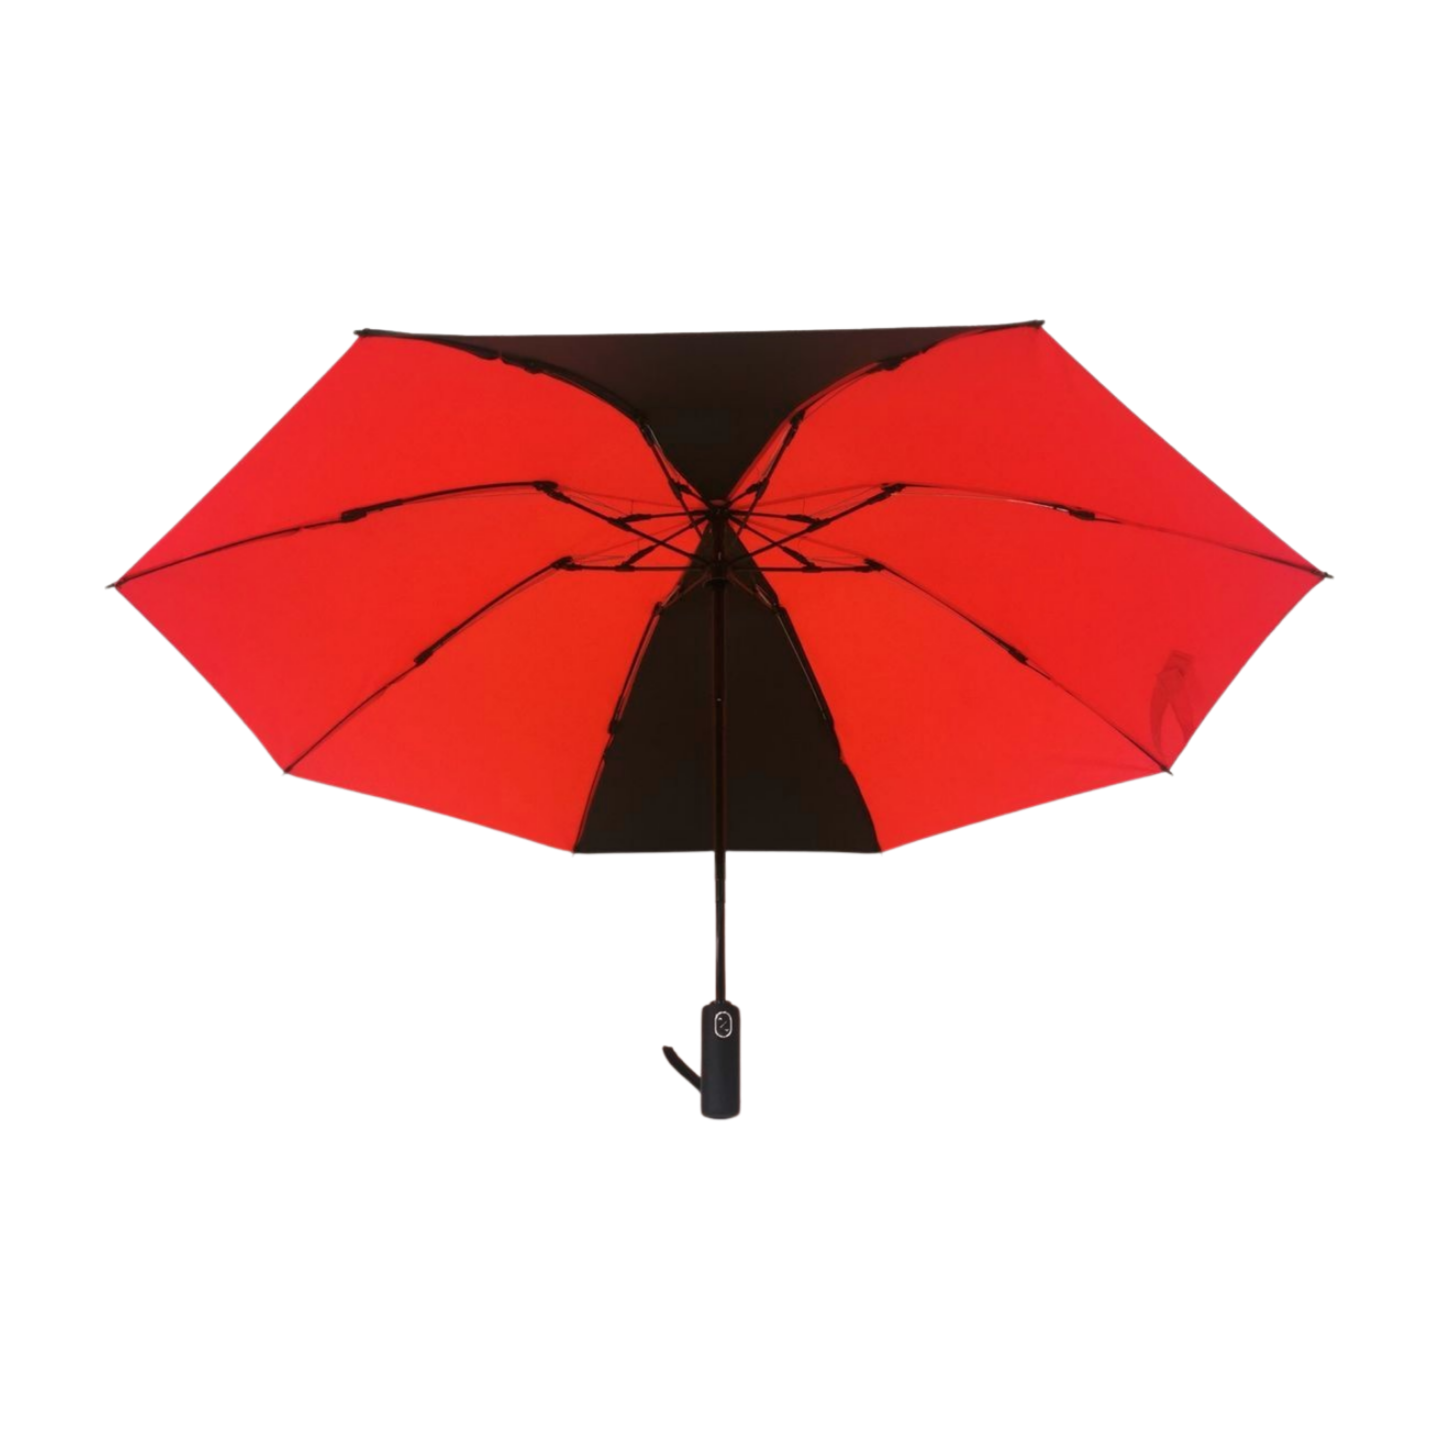 https://www.hodaumbrella.com/upgrade-fiberg…erted-umbrella-product/